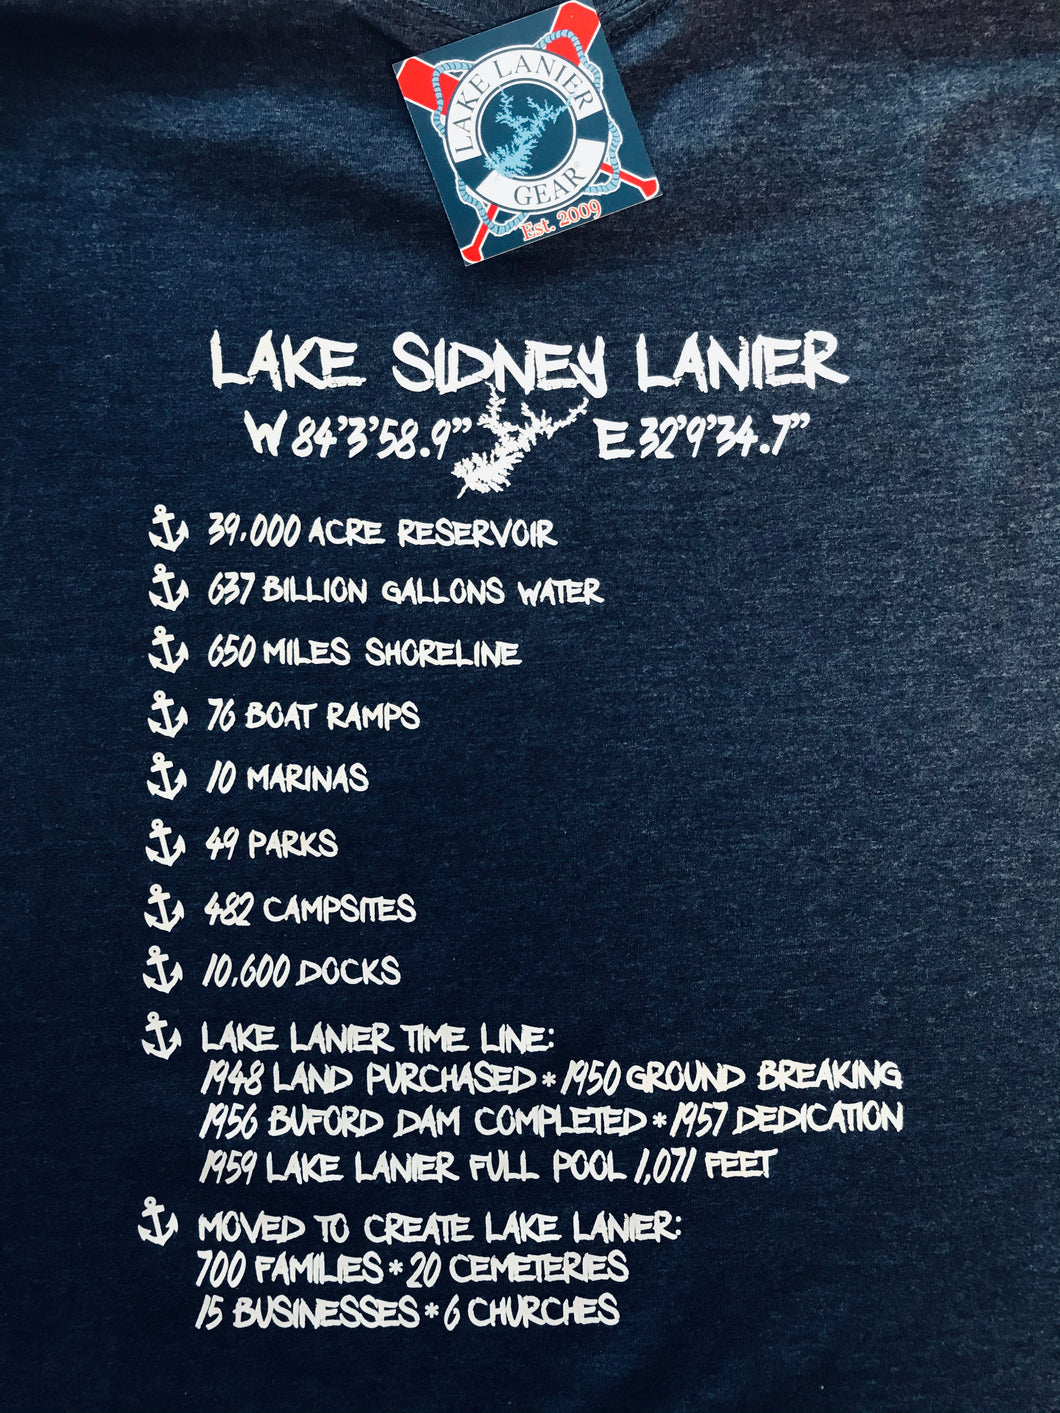 Lake Lanier “FACTS”